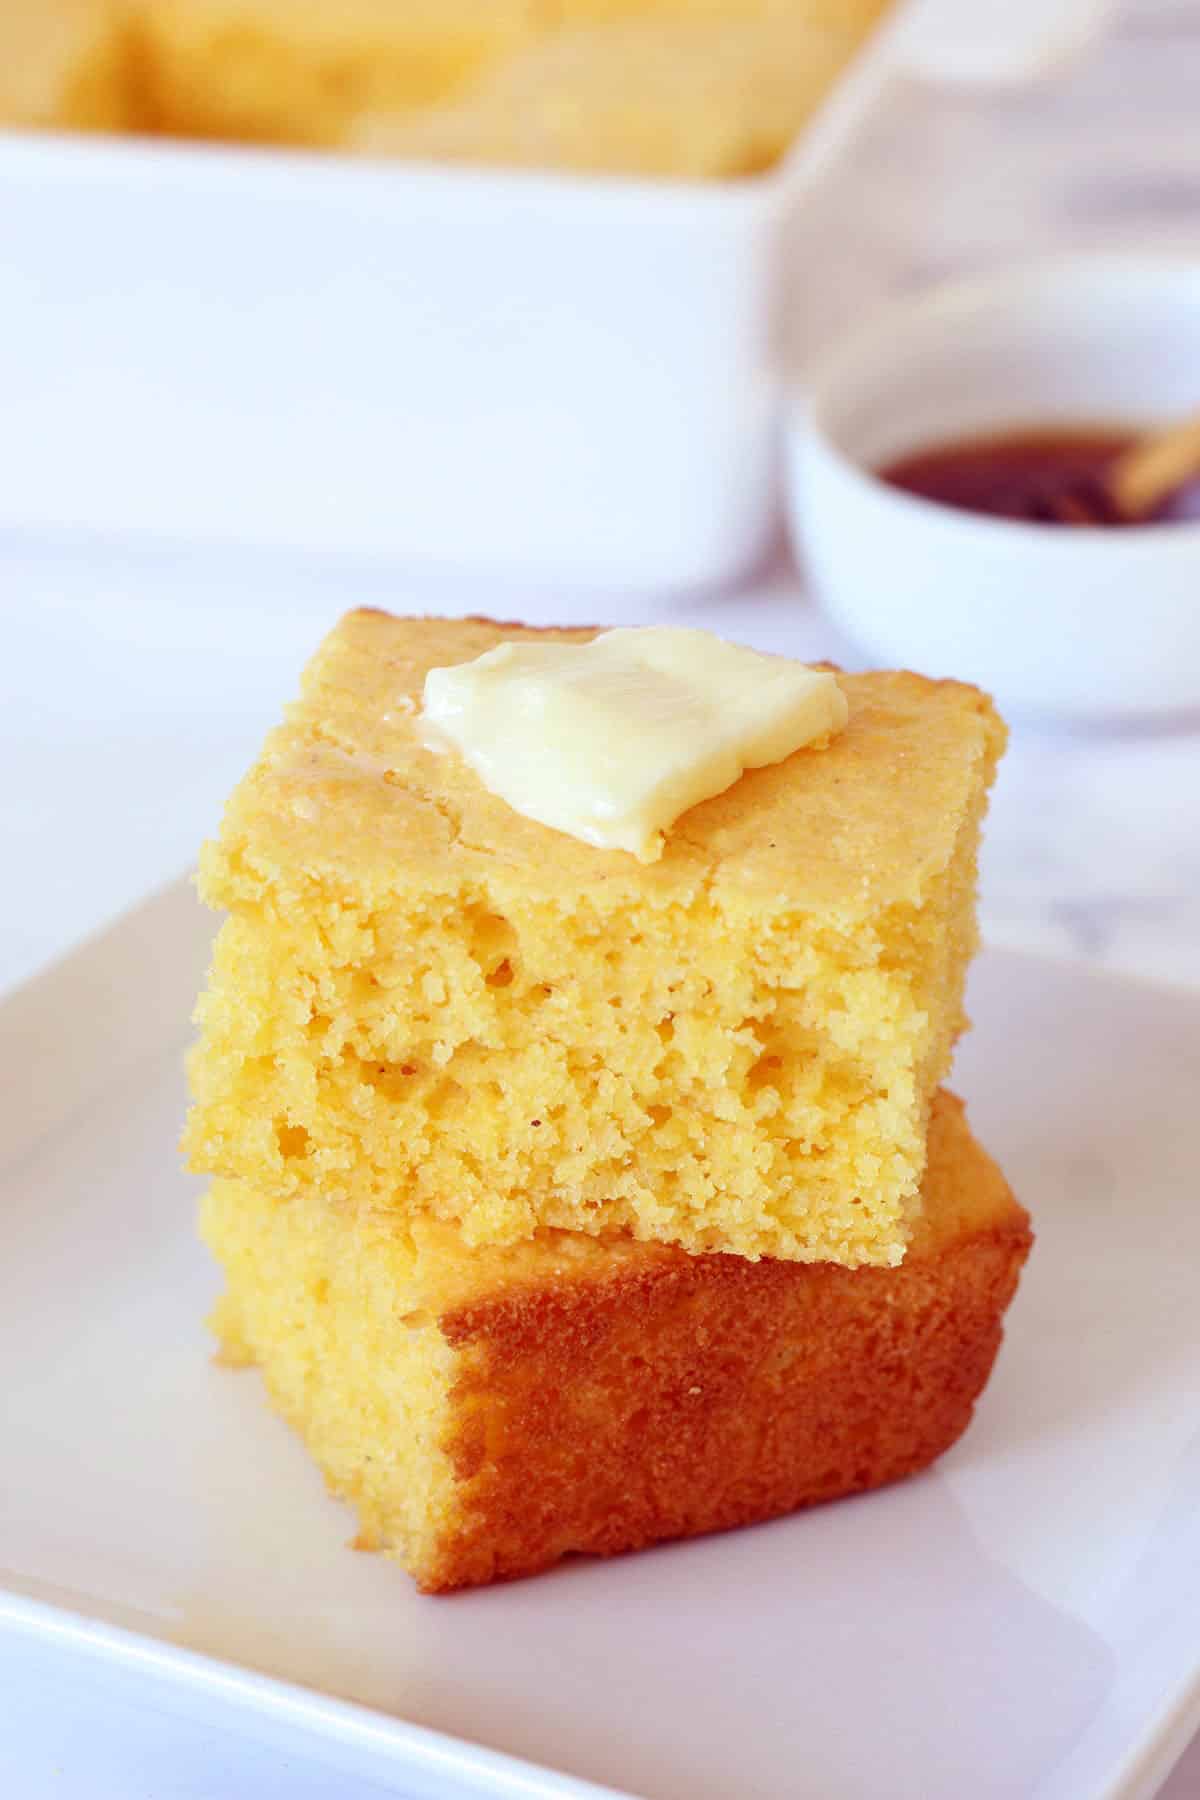 مربع های نان ذرت روی یک بشقاب سفید با یک تکه کره و یک کاسه عسل در پس زمینه چیده شده است.